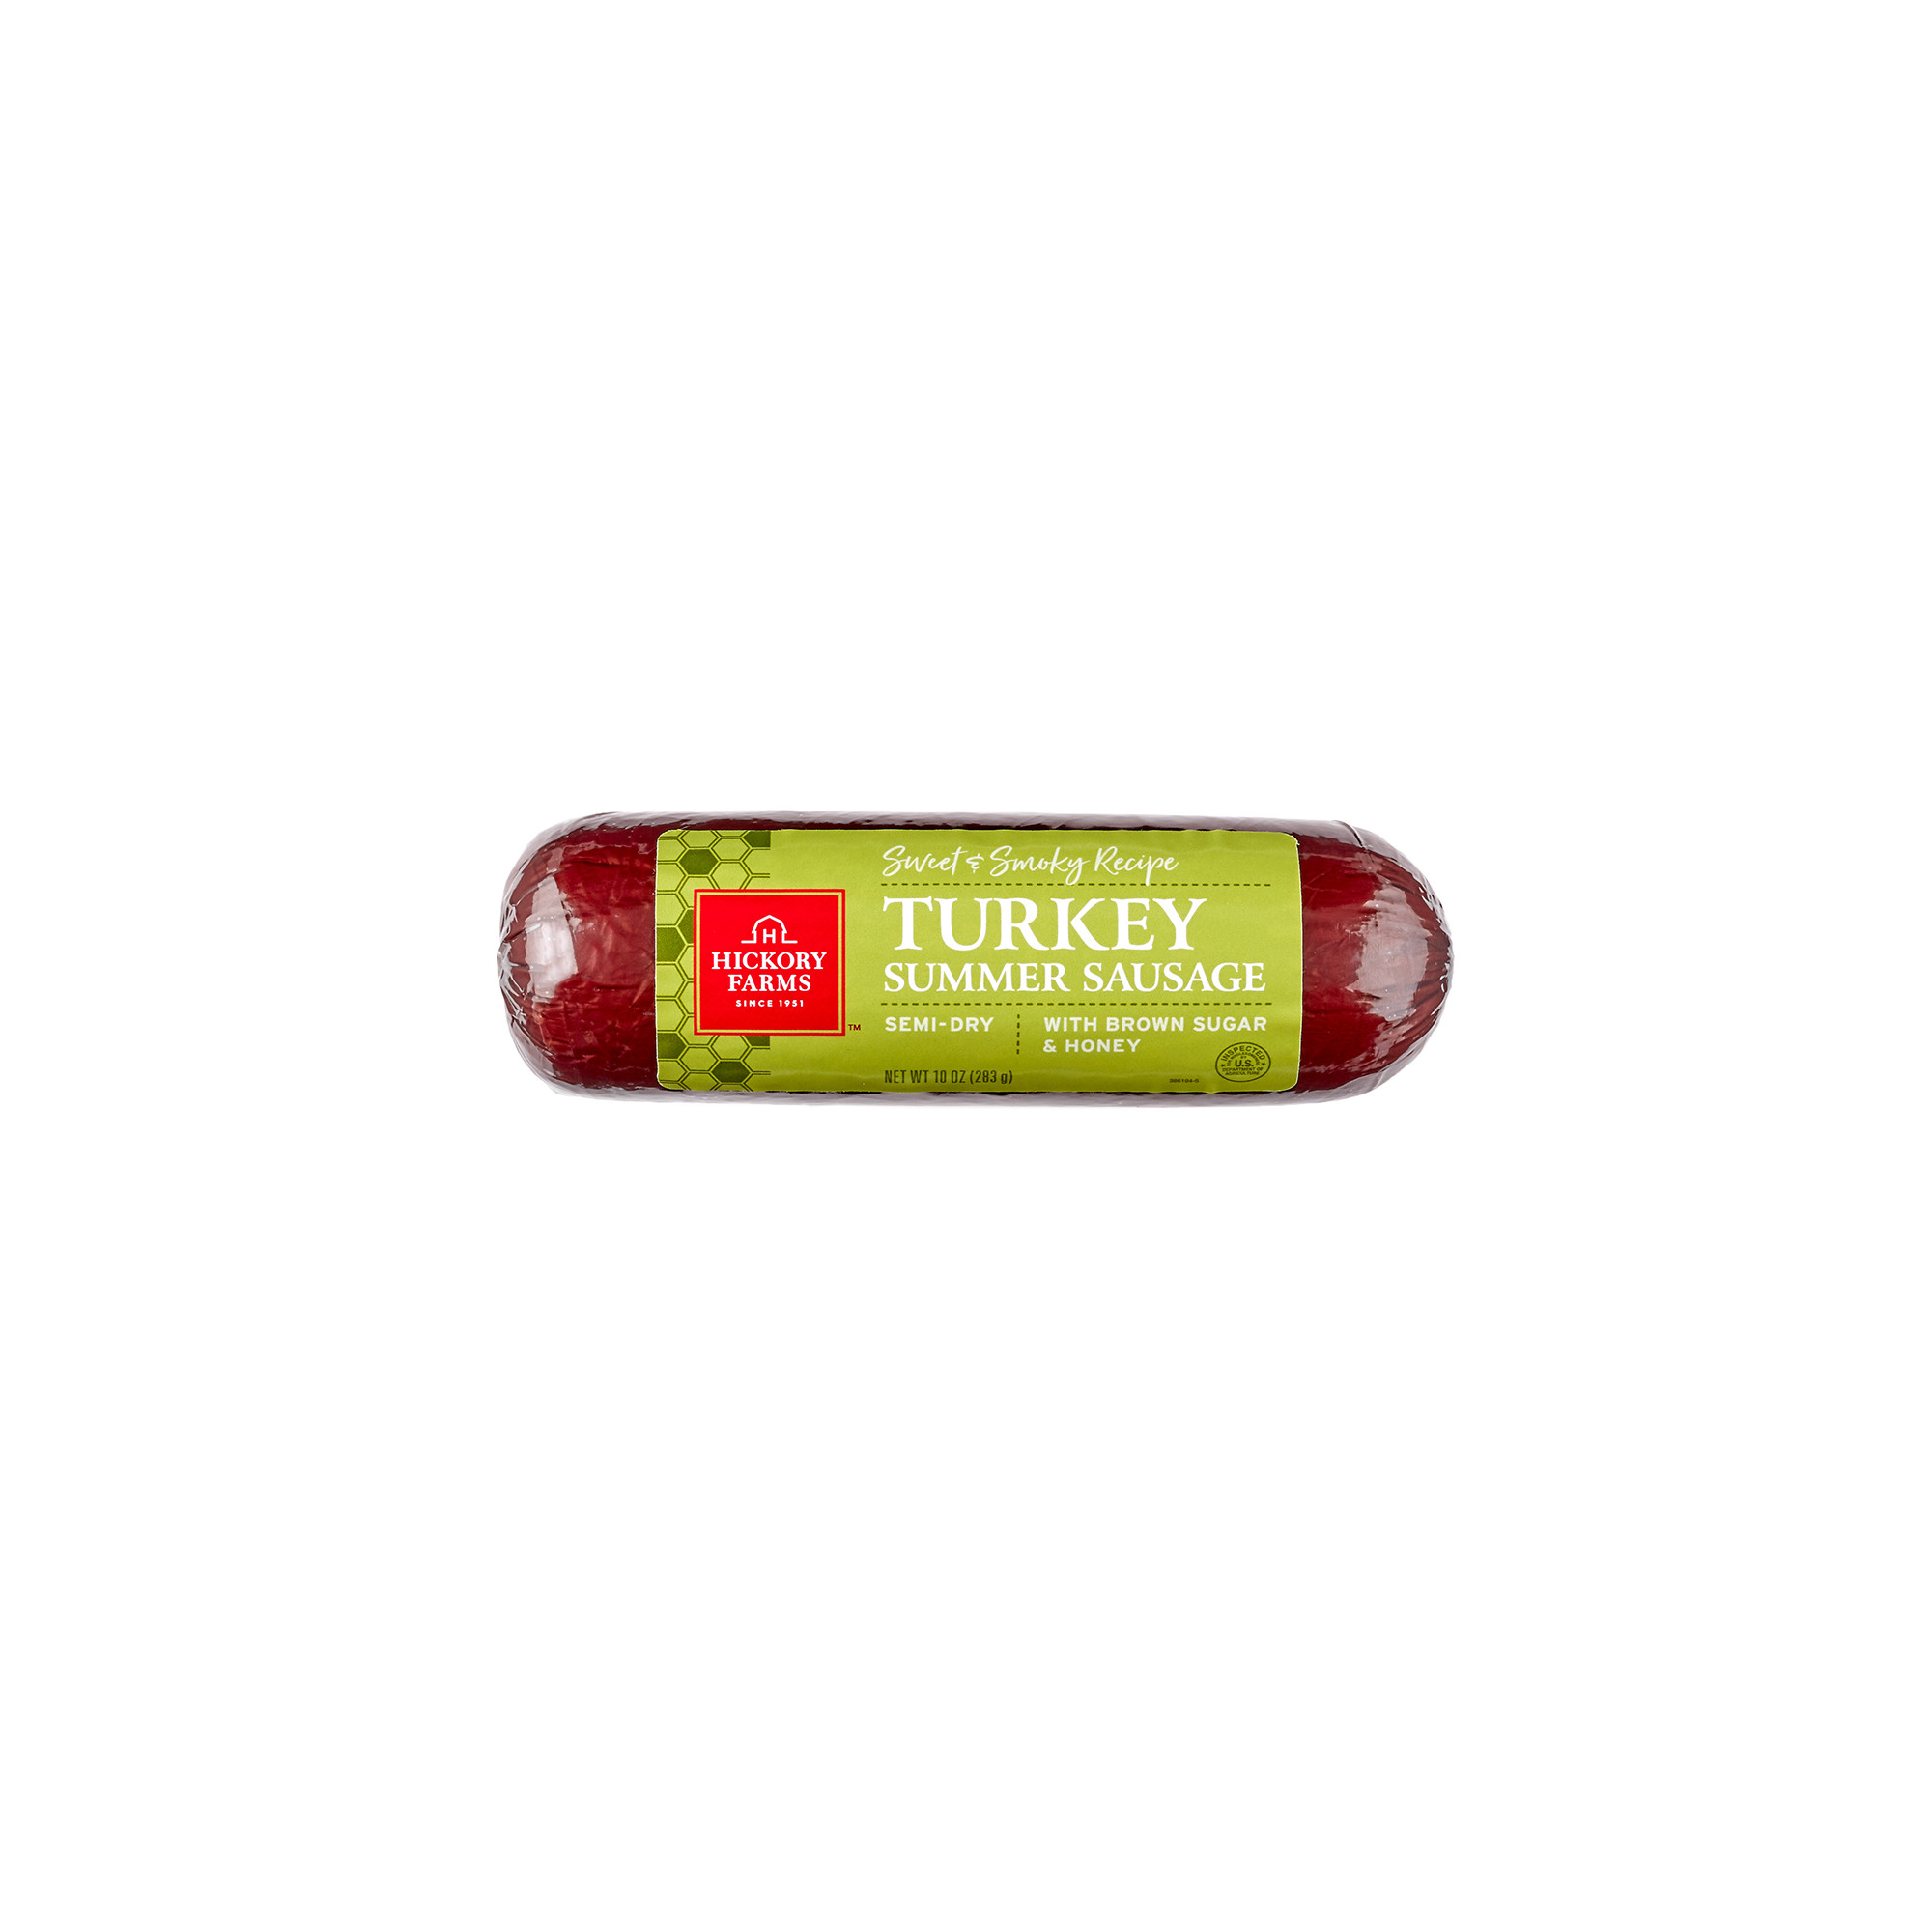 Turkey Summer Sausage
 Sweet & Smoky Turkey Summer Sausage